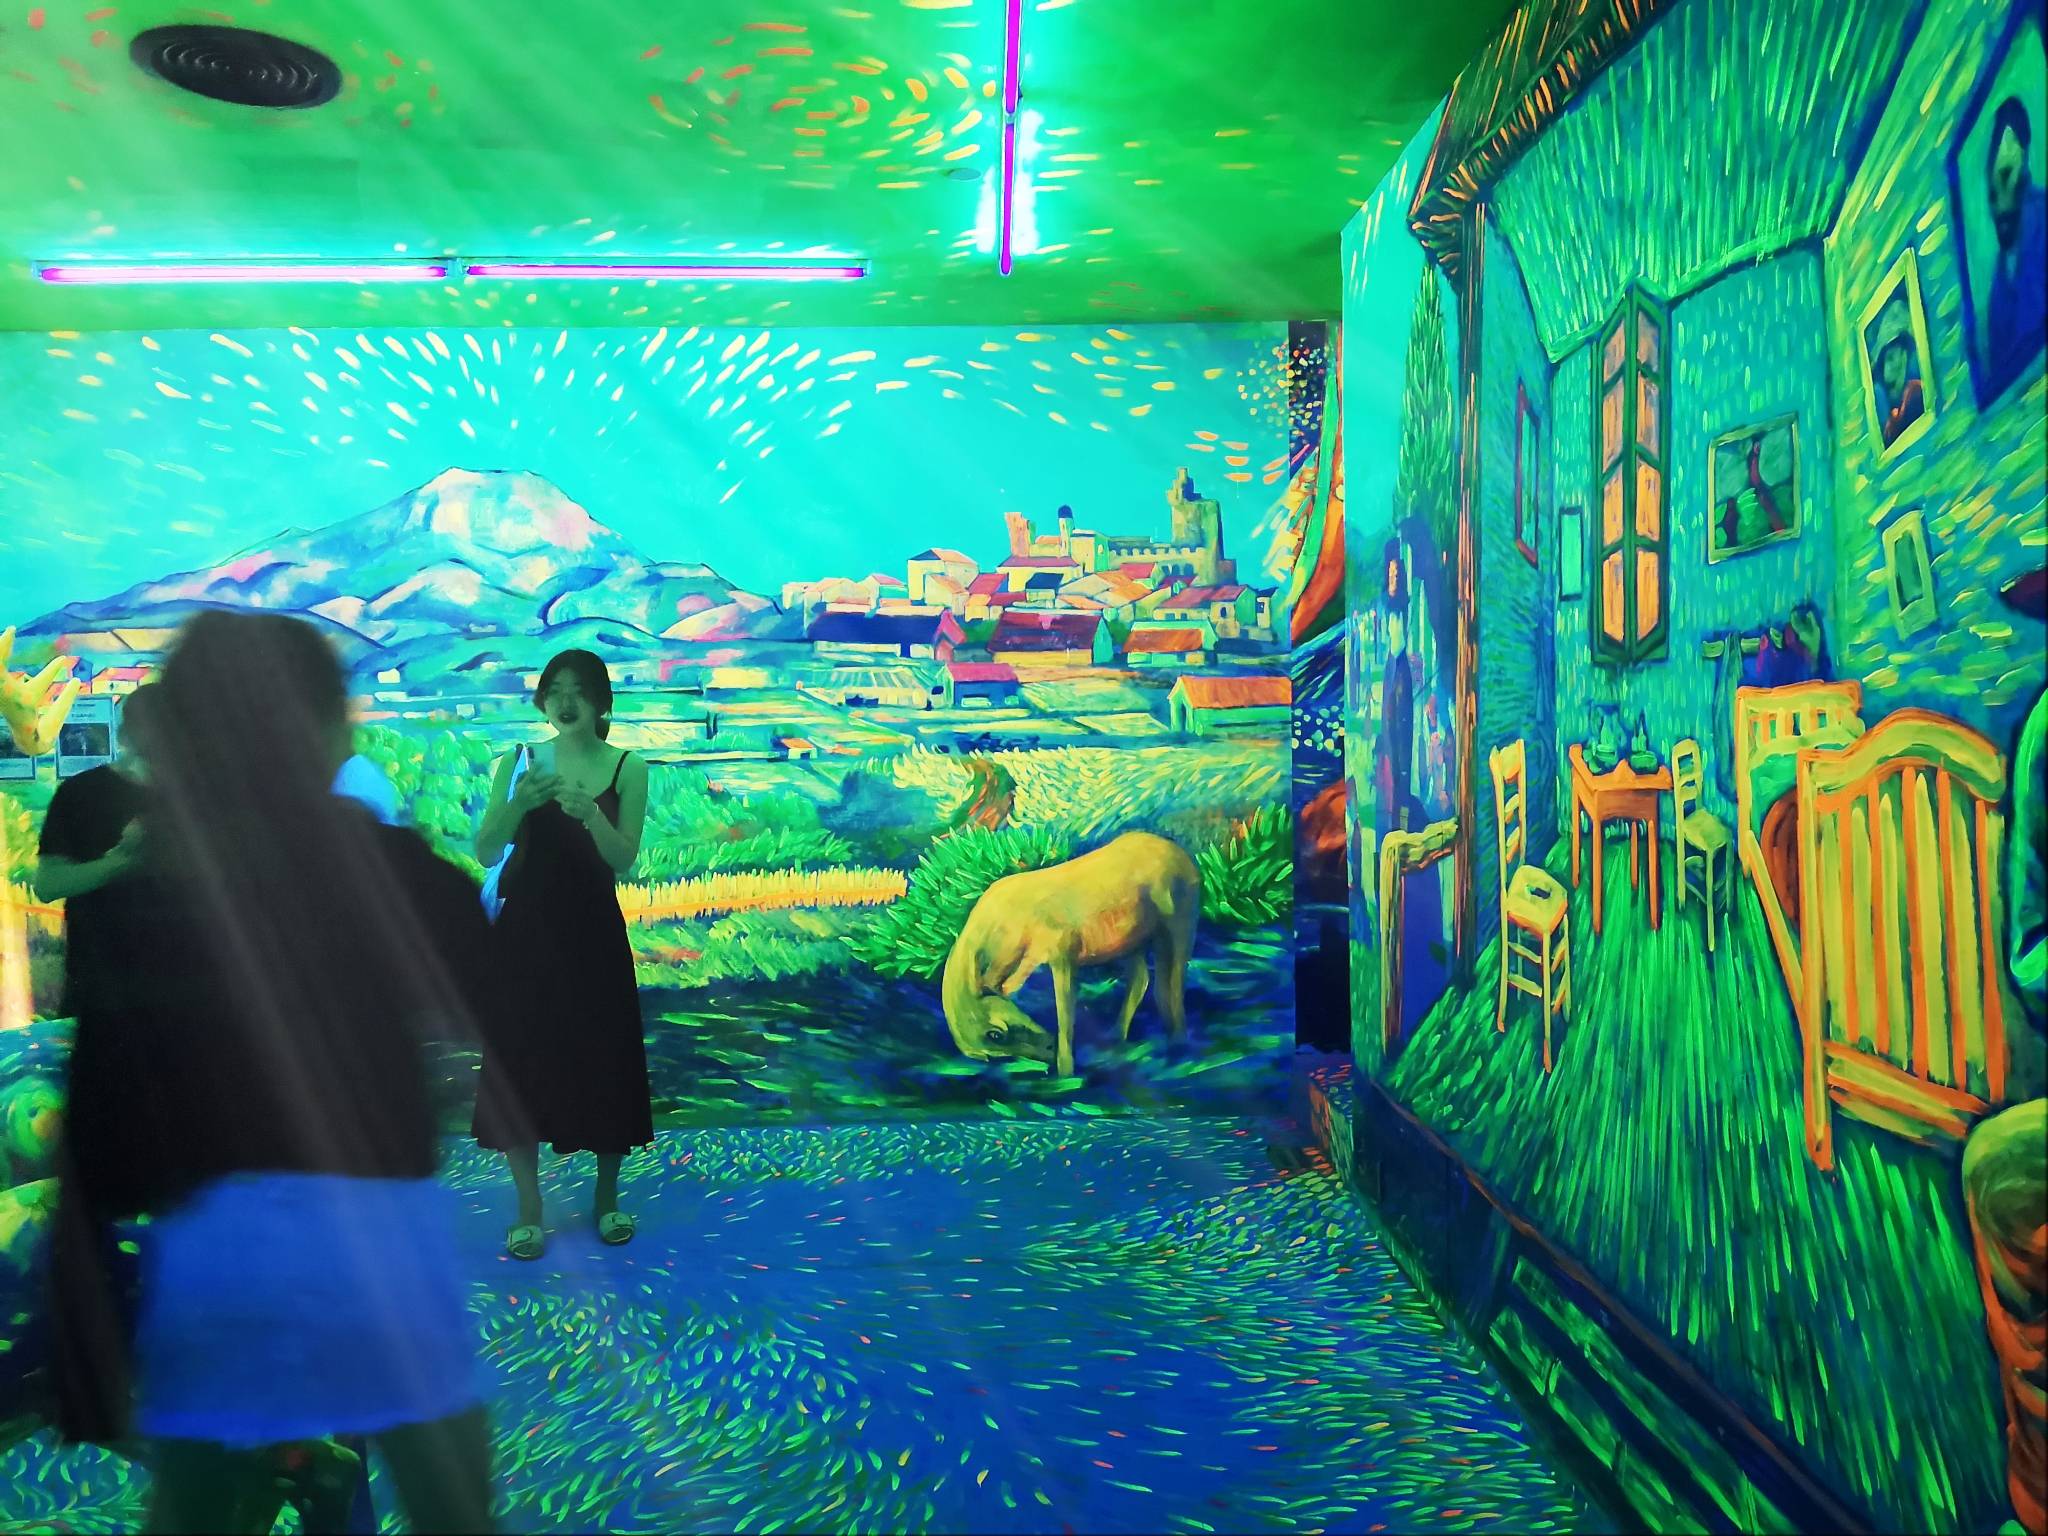 上海印象光绘艺术馆游记在流光溢彩中与大师名画互动